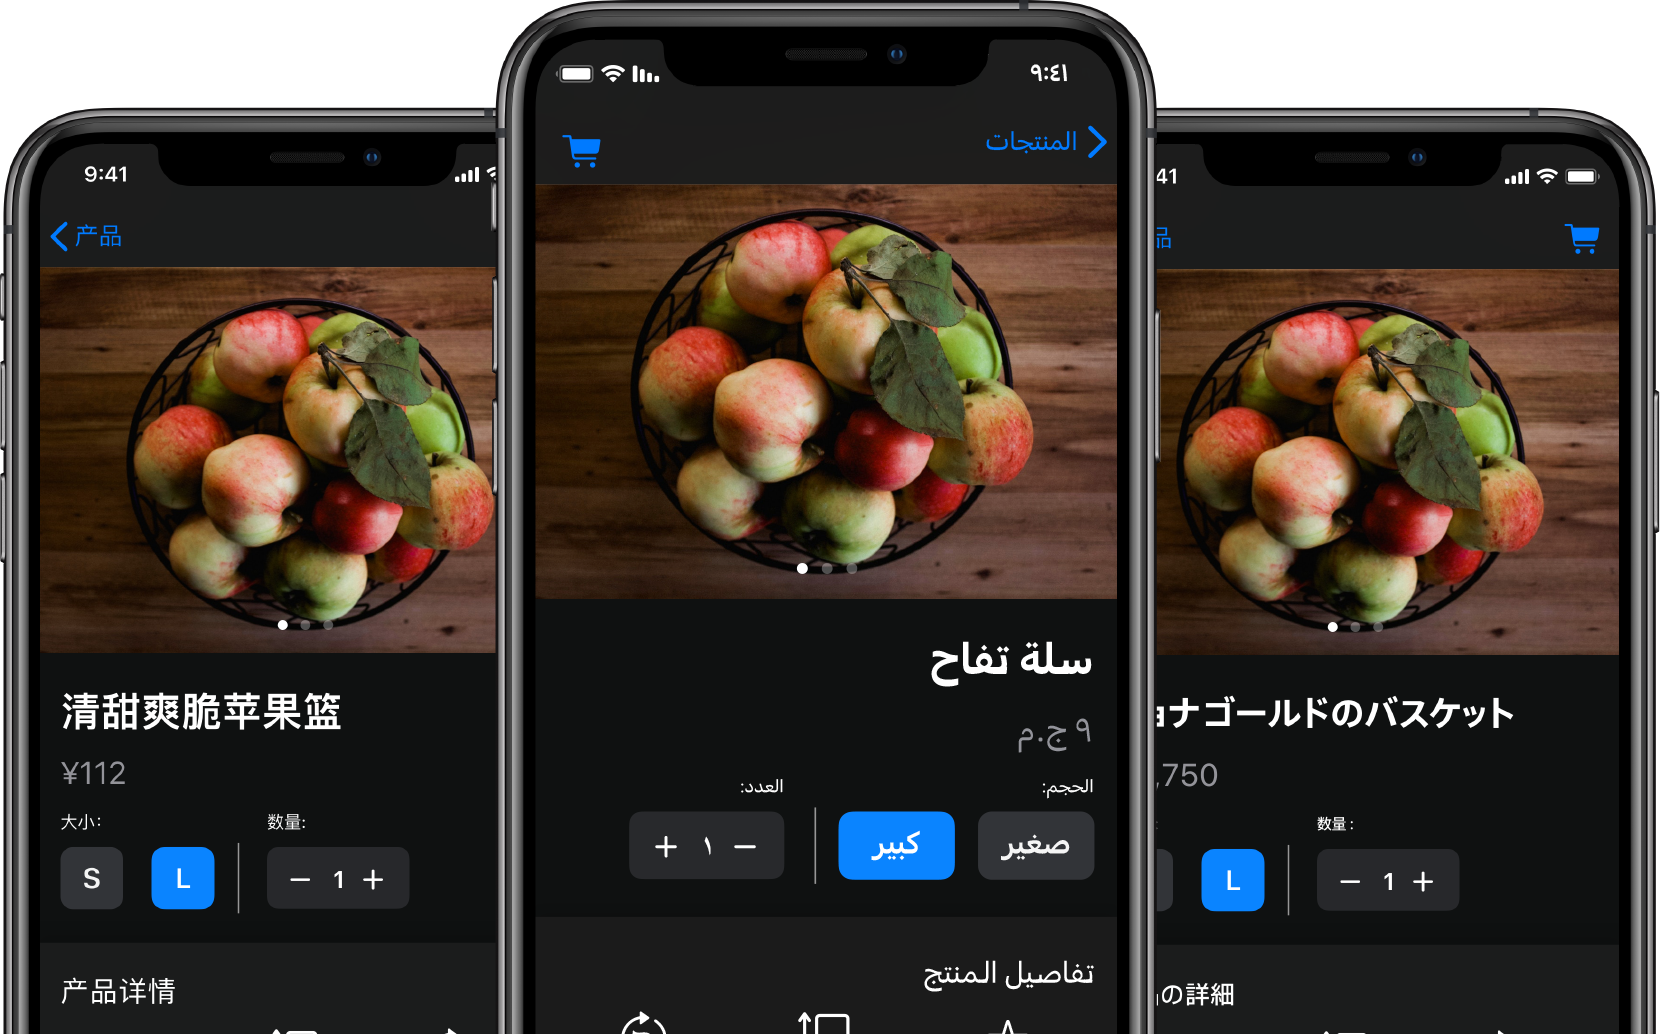 음식 주문 앱이 열려 있는 3개의 iPhone. 각 iPhone의 텍스트 콘텐츠가 다른 언어로 번역되어 있음.